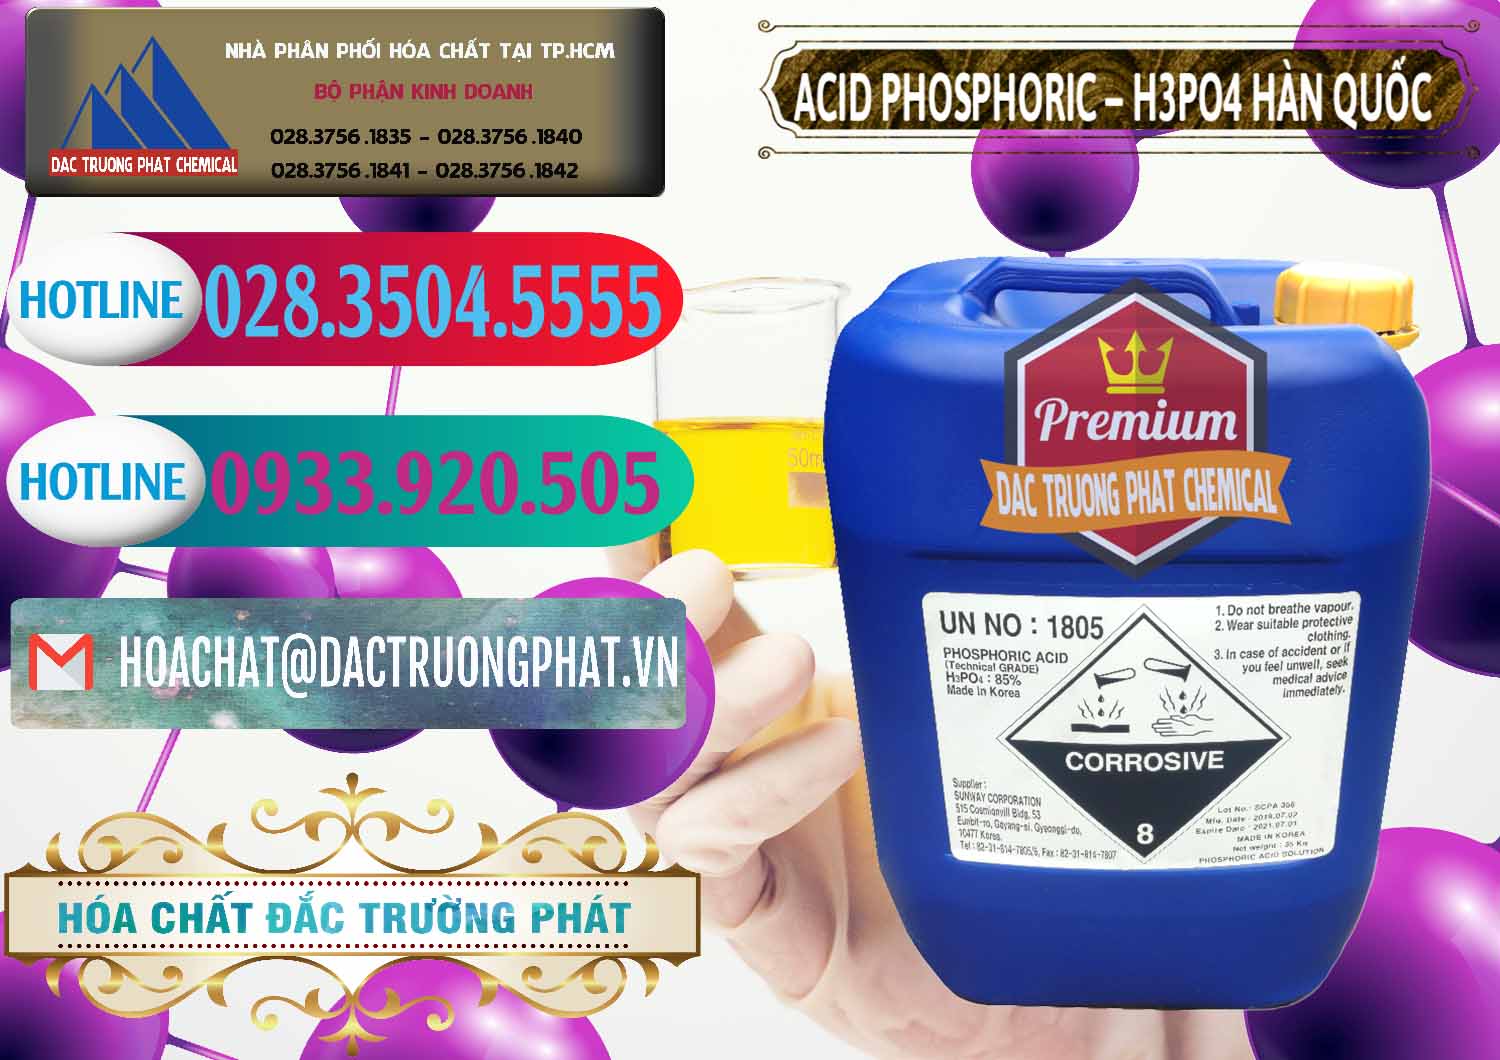 Đơn vị chuyên cung ứng ( bán ) Acid Phosphoric – H3PO4 85% Can Xanh Hàn Quốc Korea - 0016 - Công ty kinh doanh và cung cấp hóa chất tại TP.HCM - truongphat.vn